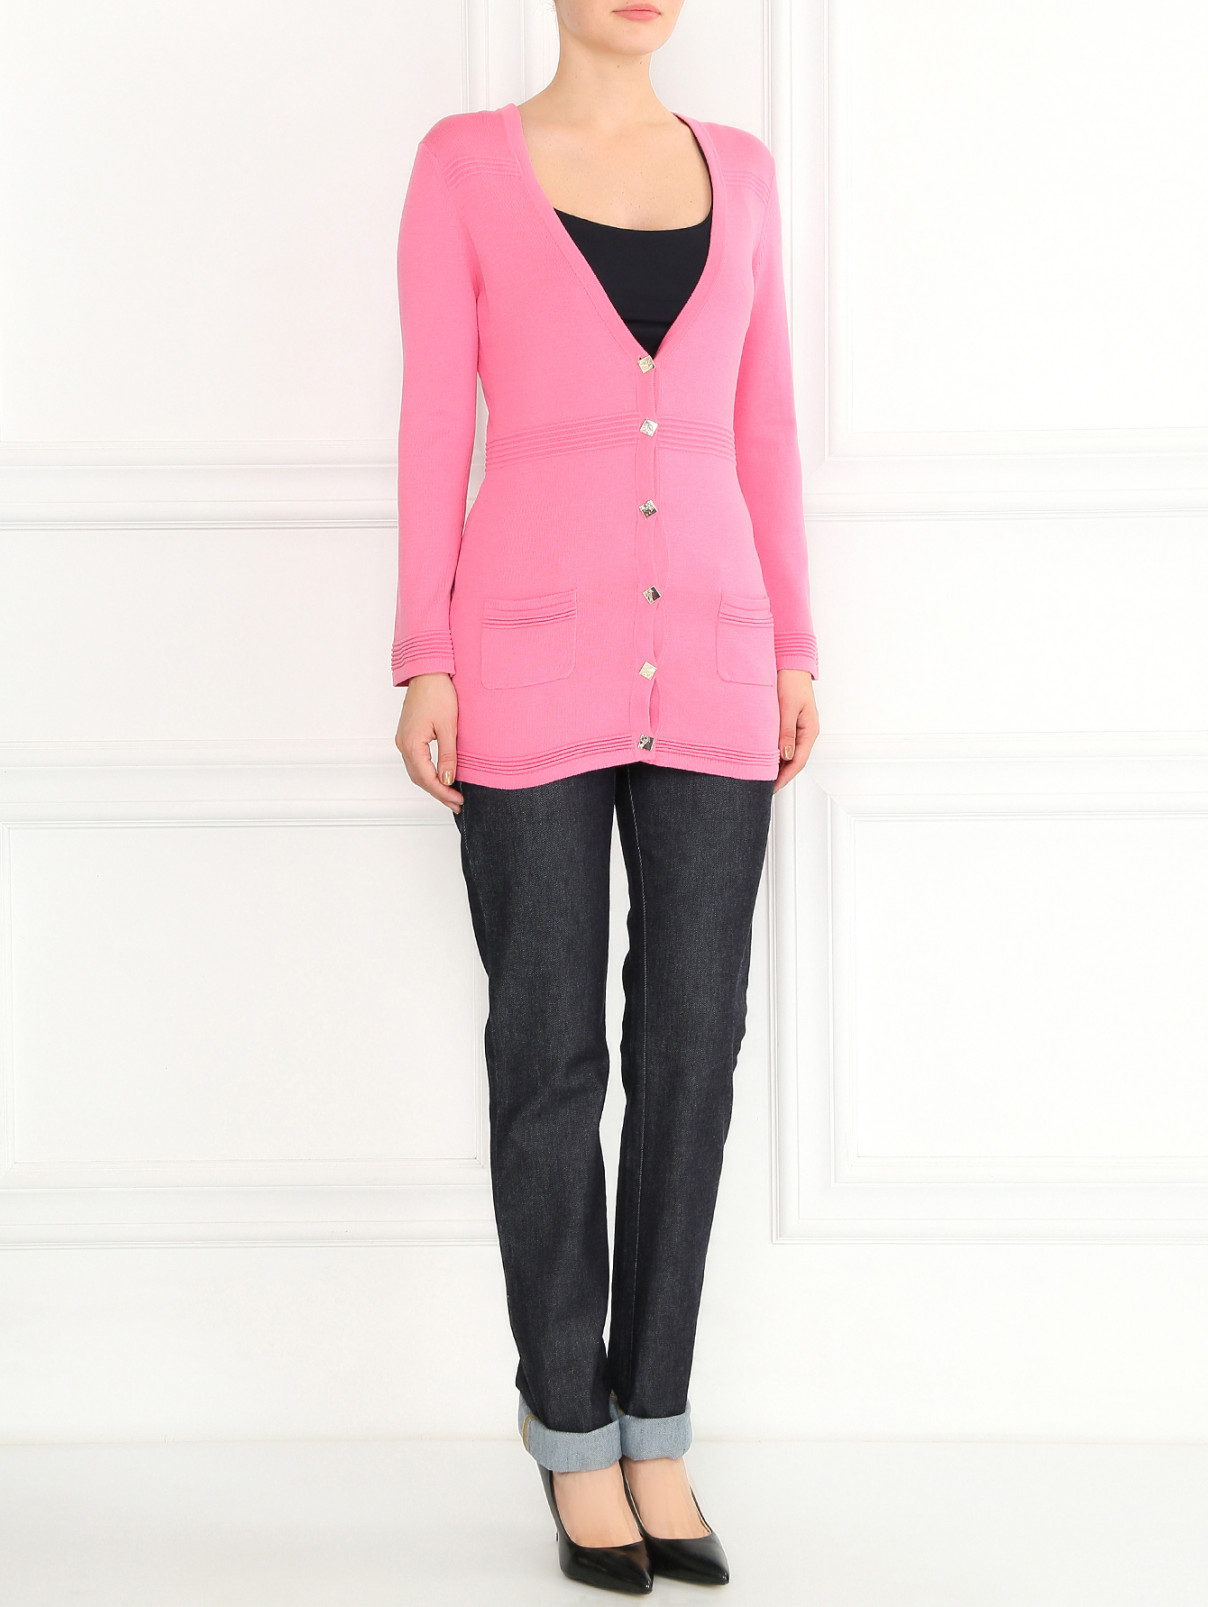 Удлиненный кардиган из хлопка и шелка Versace Collection  –  Модель Общий вид  – Цвет:  Розовый